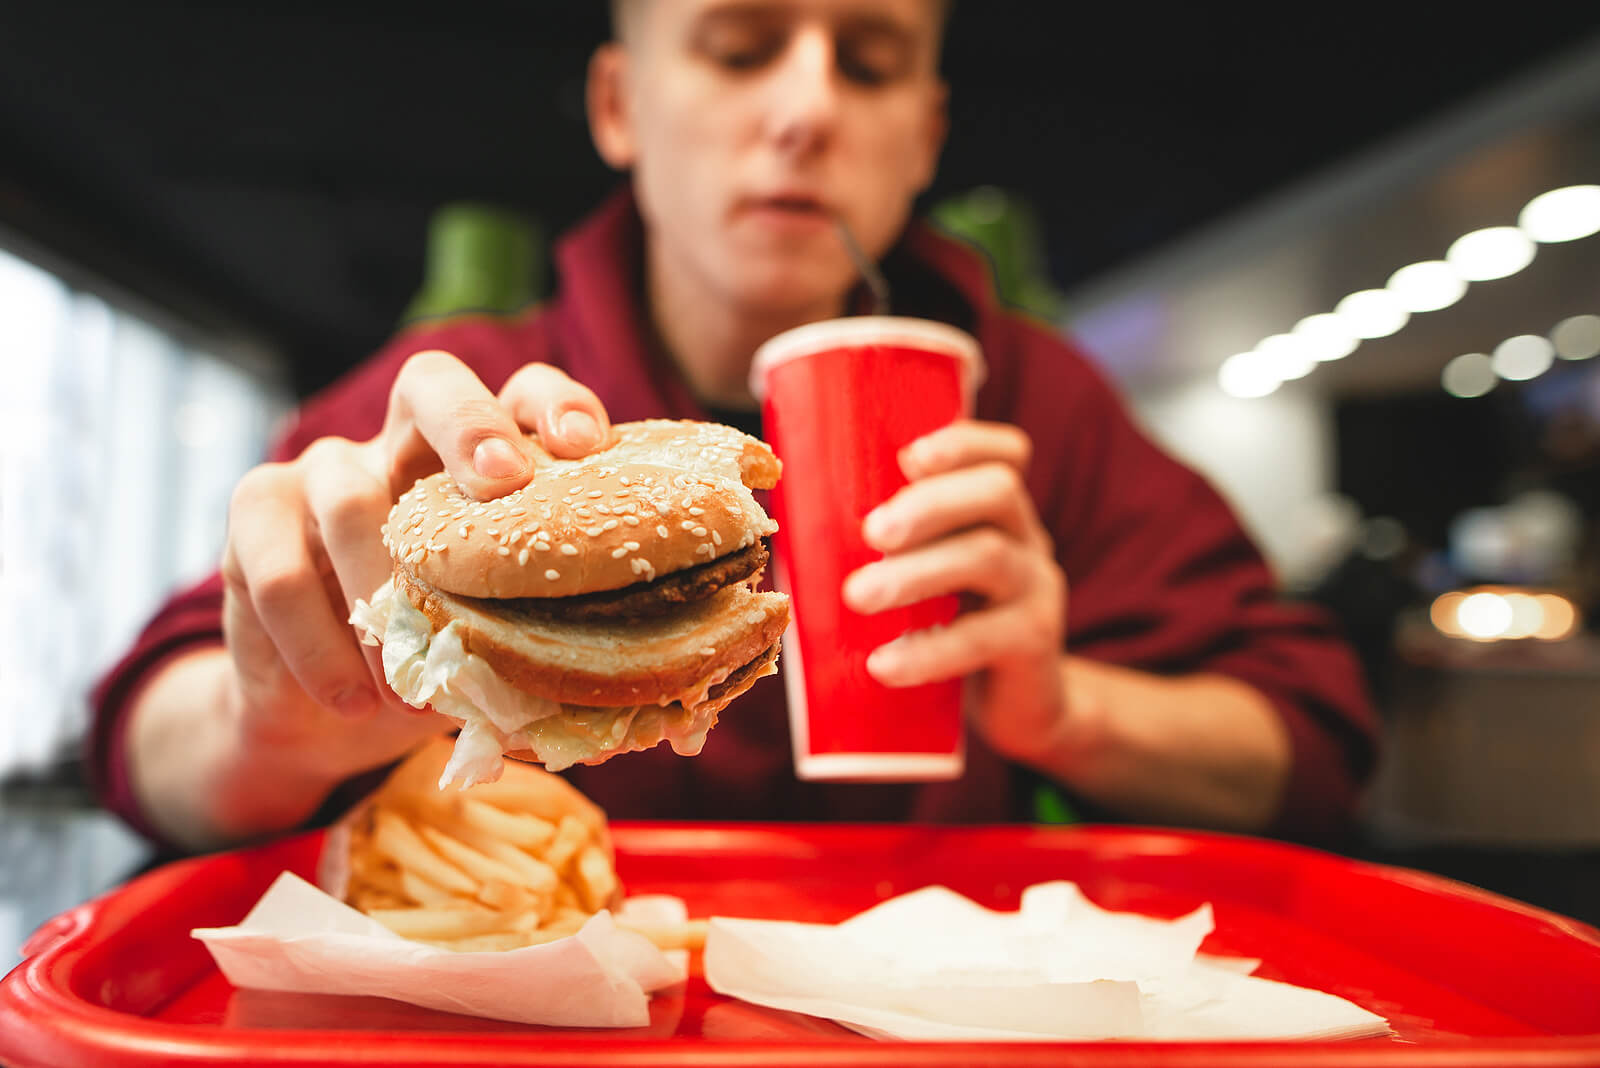 Adolescente che mangia un hamburger in una catena di fast food.